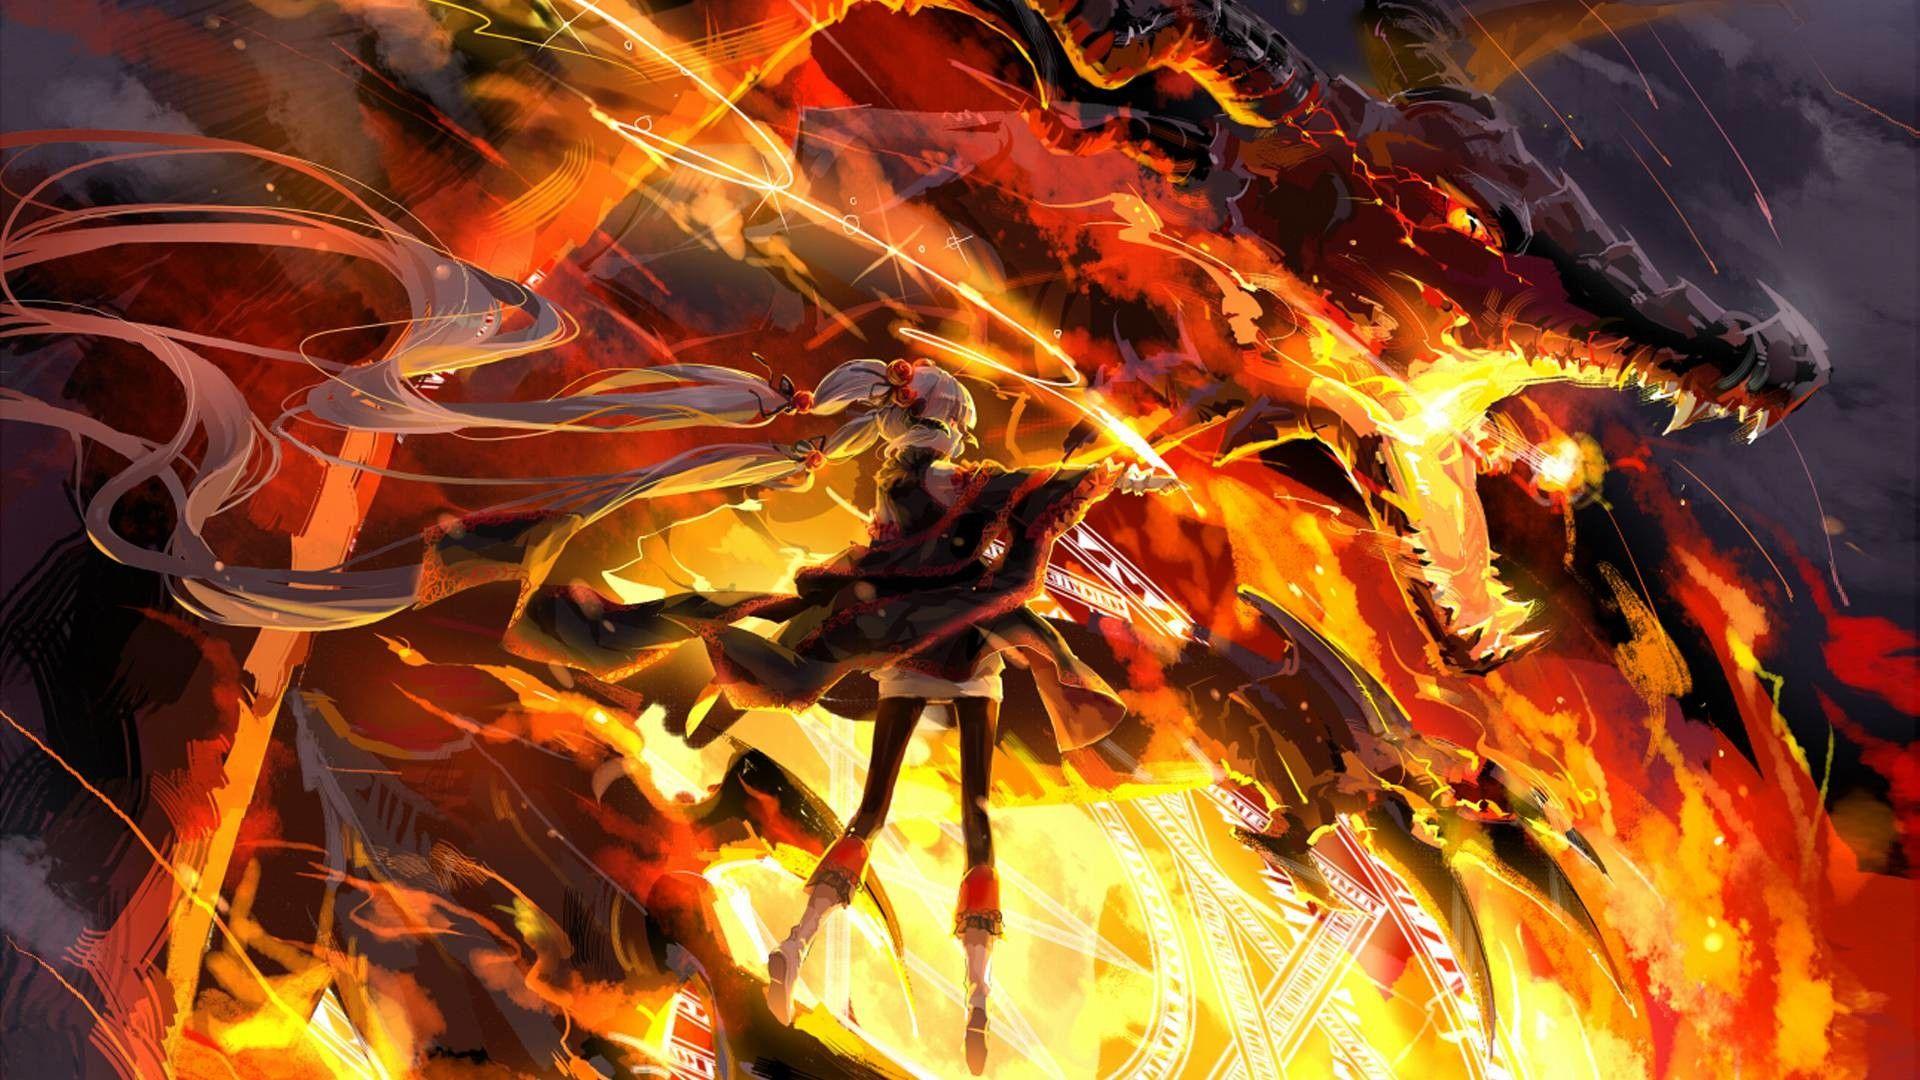 be62-dragon-ball-fire-art-illustration-hero-anime-wallpaper